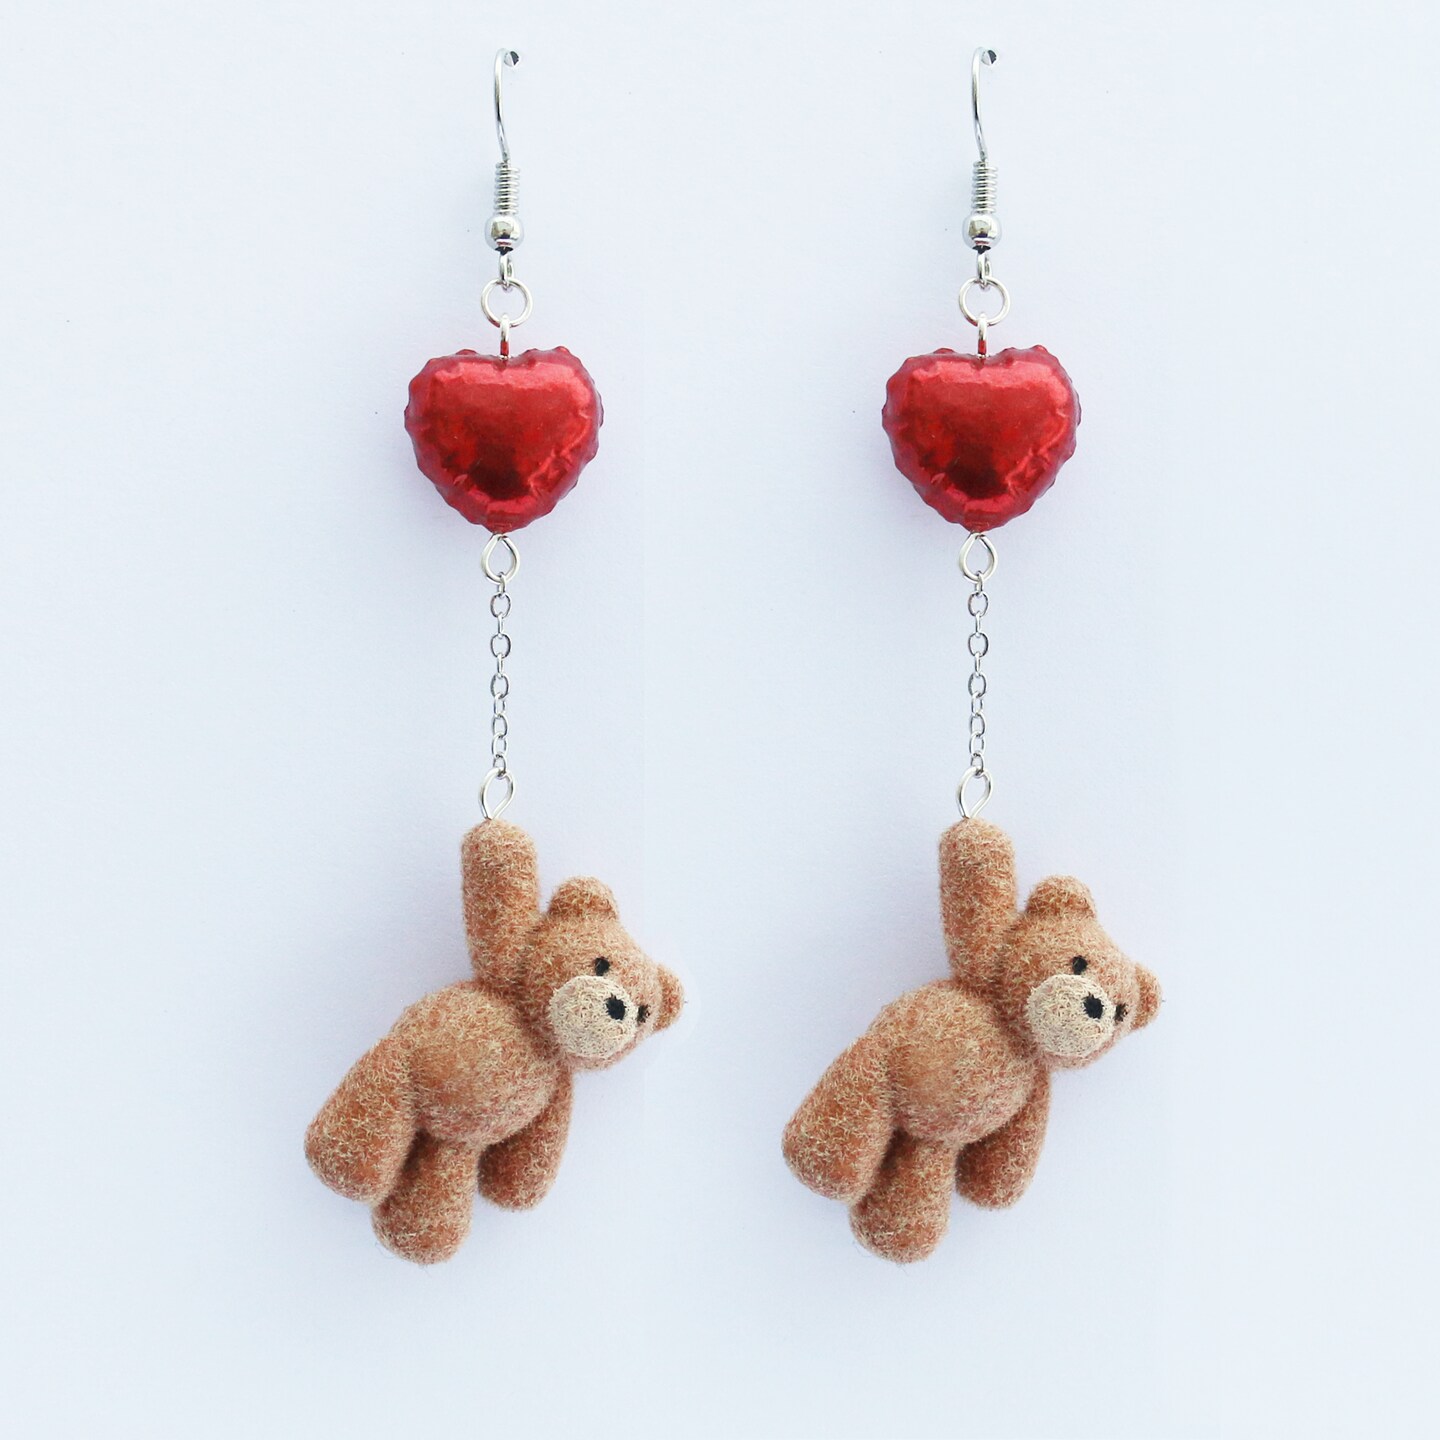 Red Heart Earrings | Heart Studs | Wooden Earrings | Anniversary Gift –  Birch Street Studio